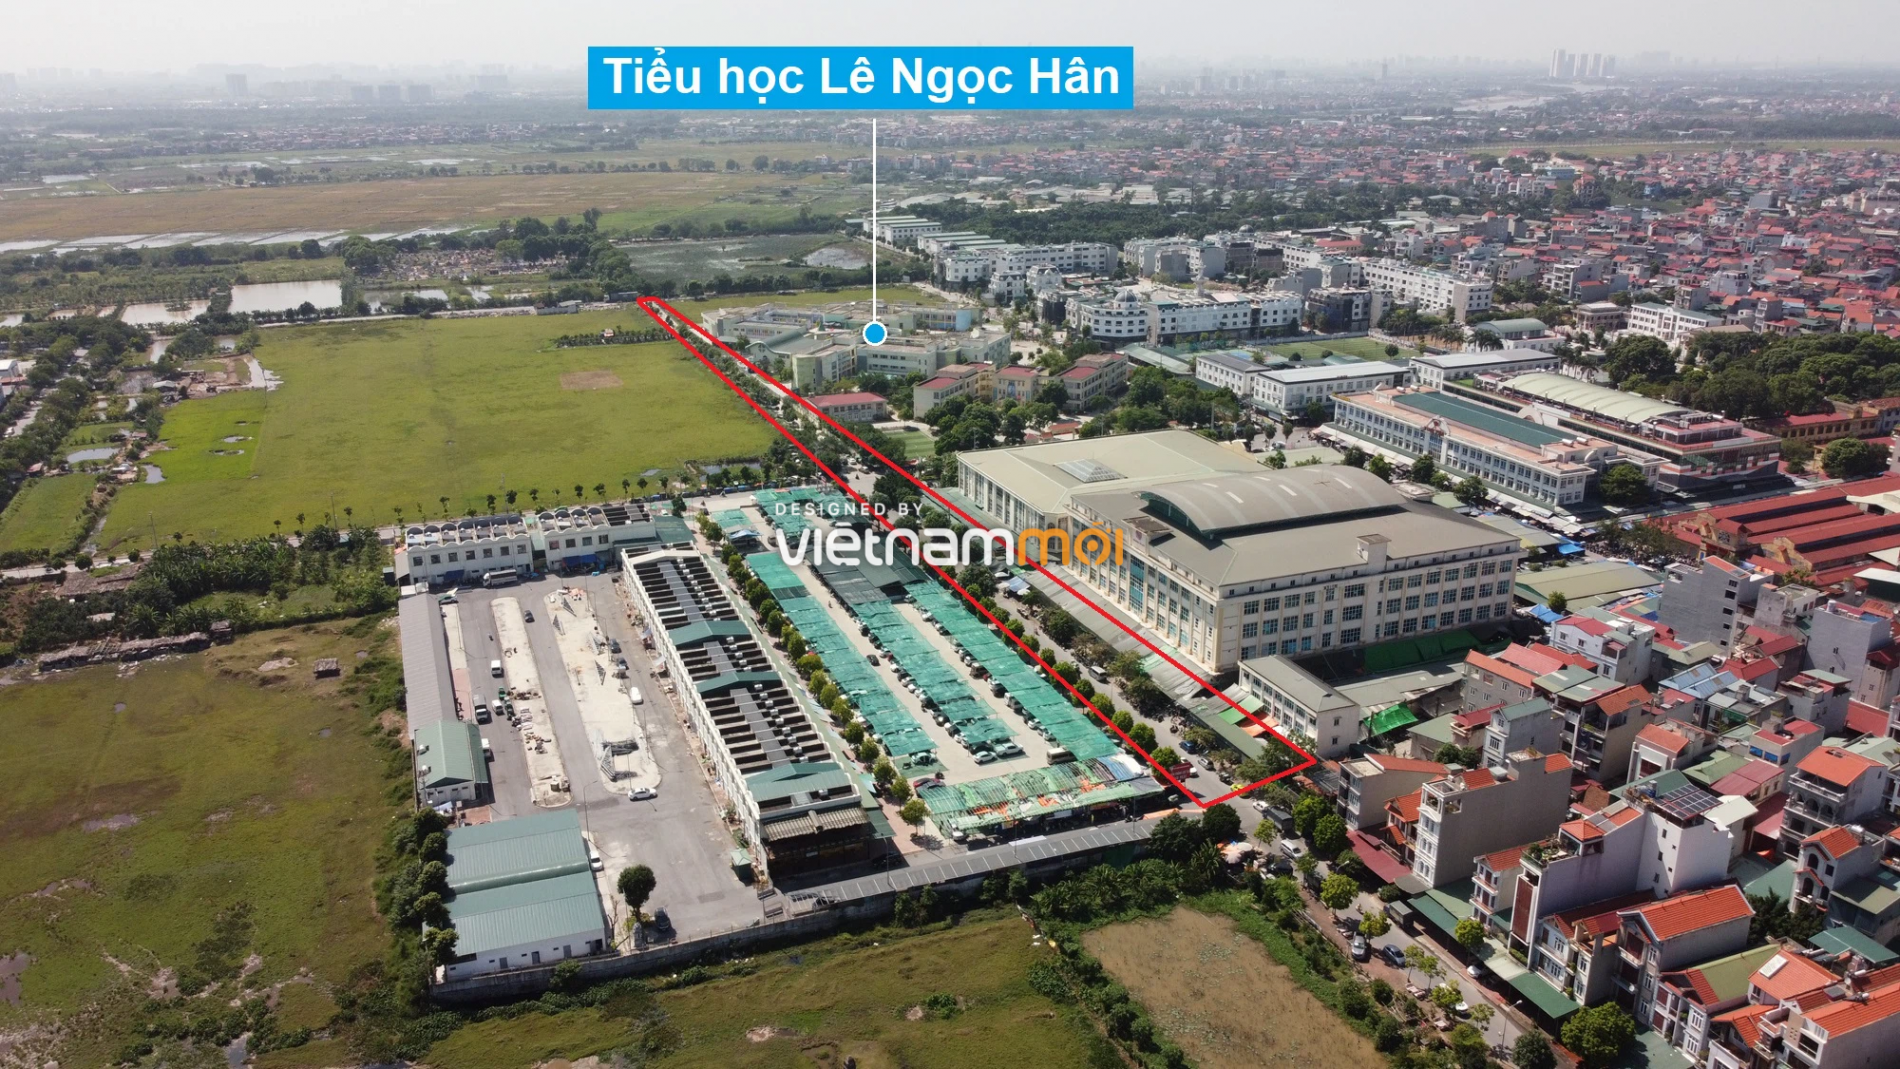 Những khu đất sắp thu hồi để mở đường ở huyện Gia Lâm, Hà Nội (phần 1) - Ảnh 18.